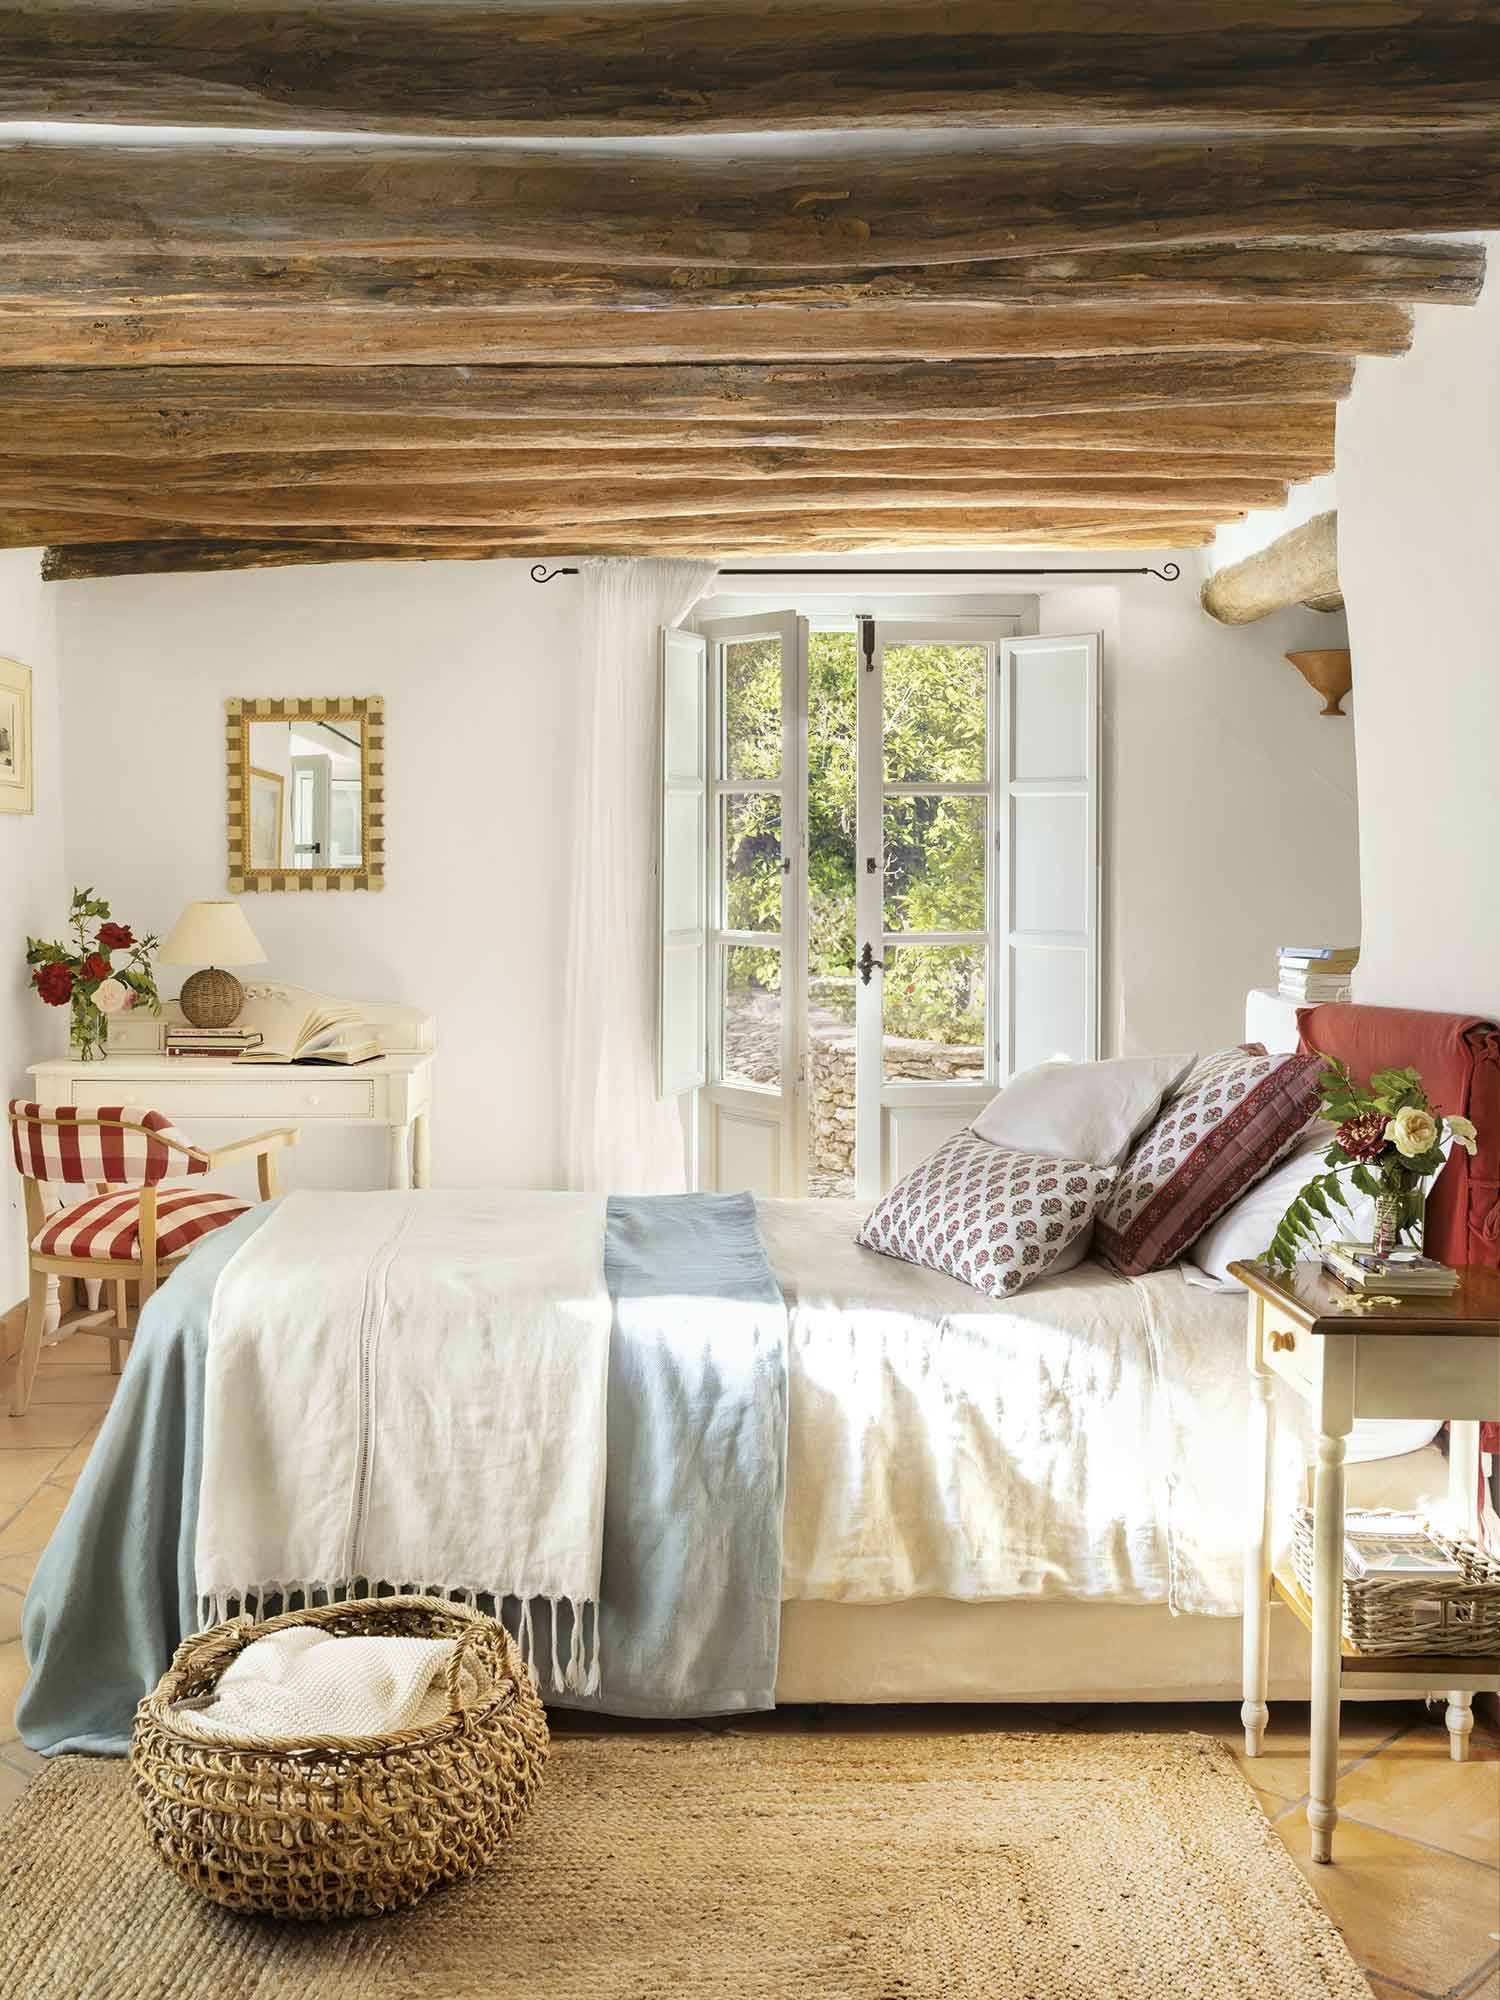 Dormitorio con vigas de madera y cabecero granate tapizado.